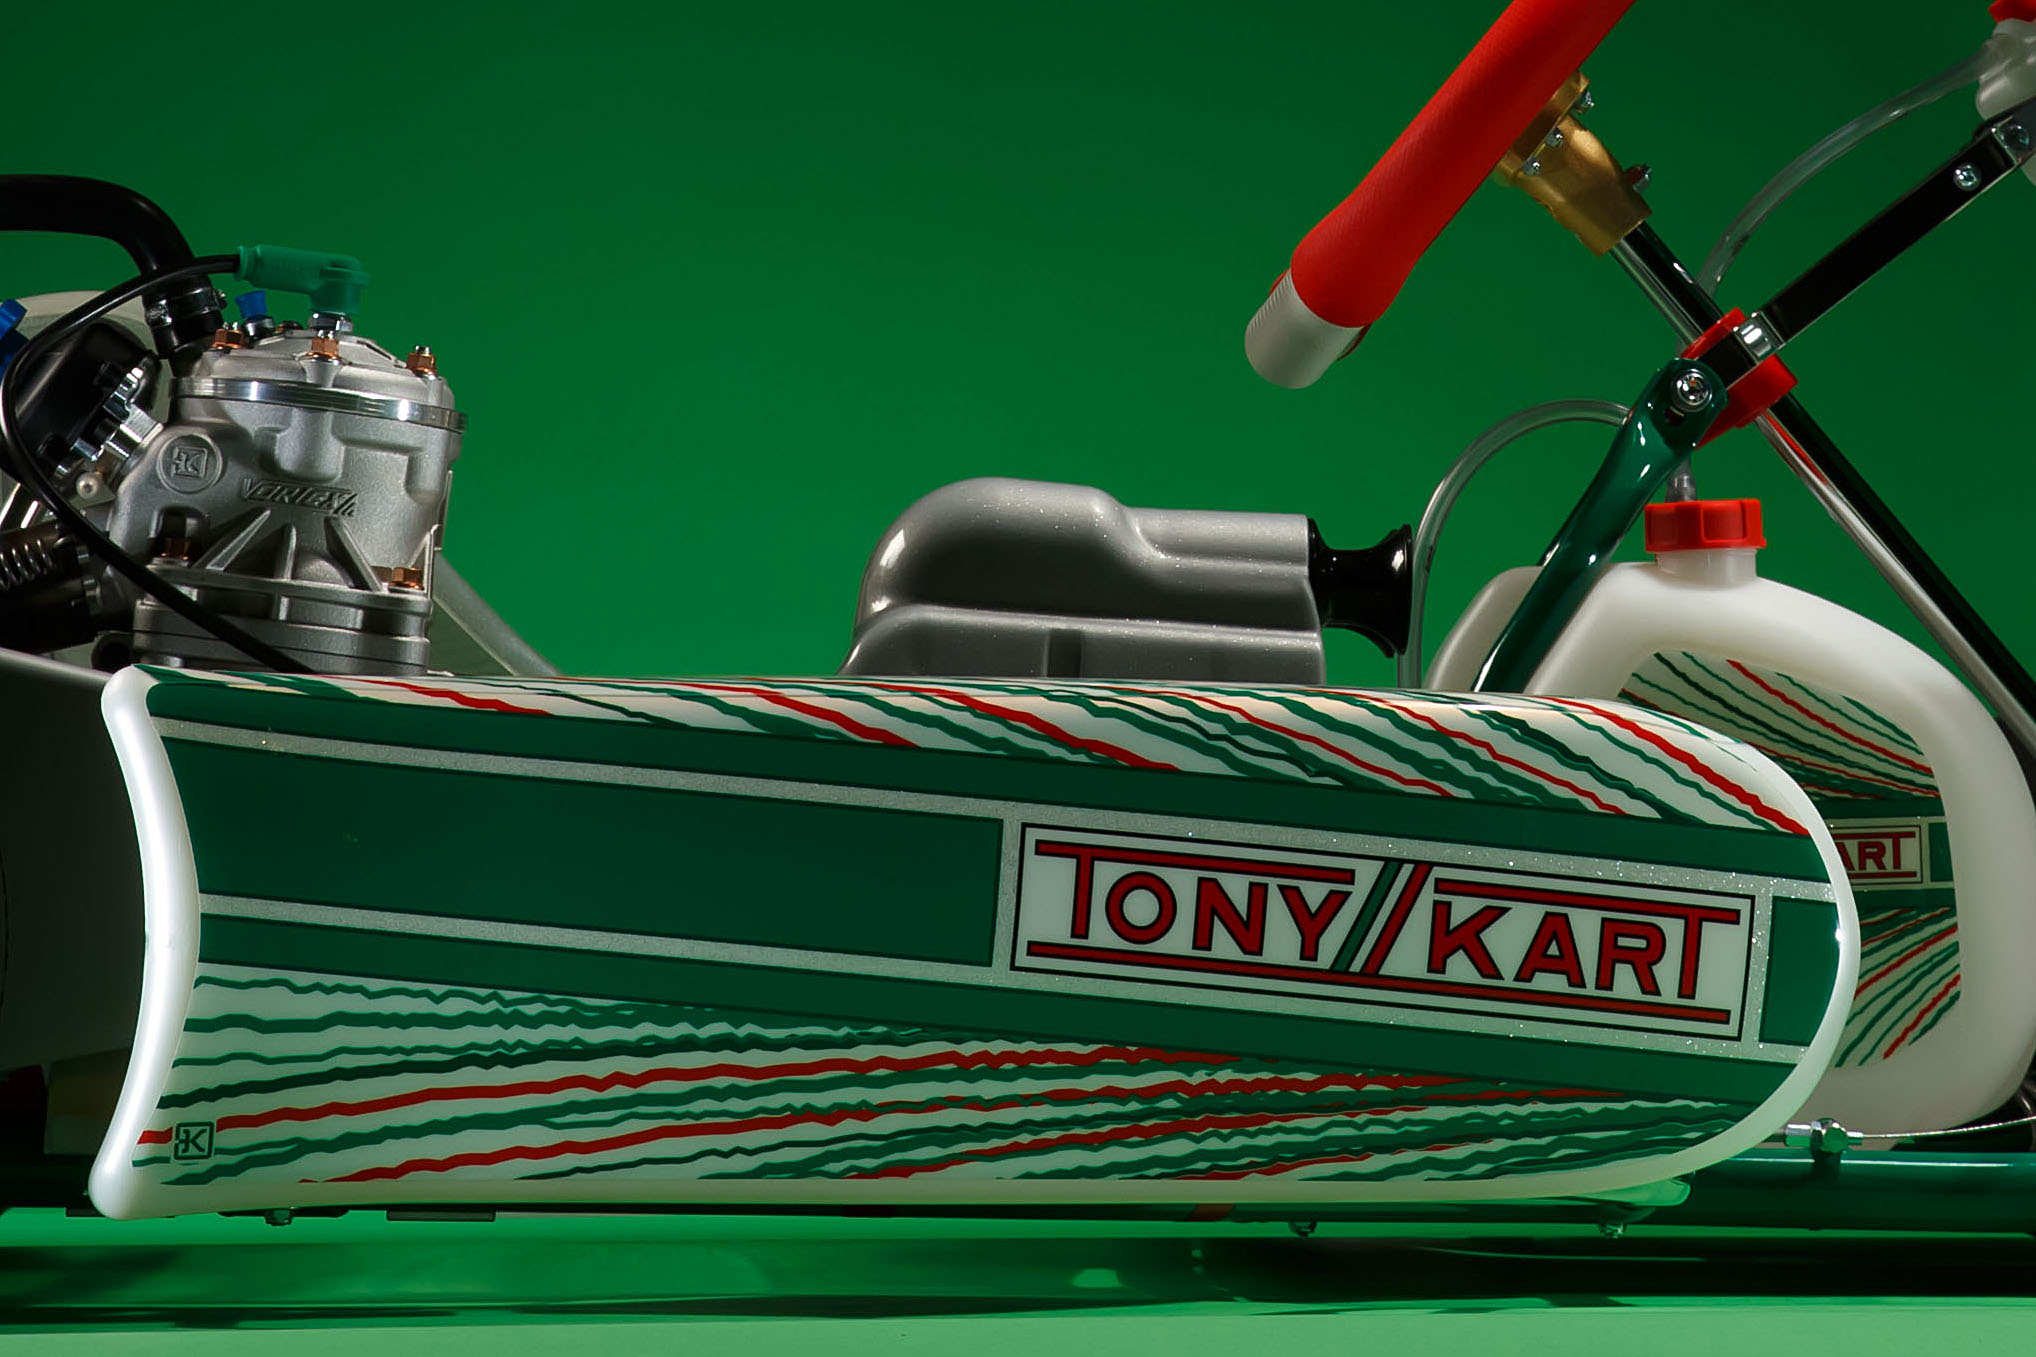 TonyKart Racer 401RR KZ BSZ